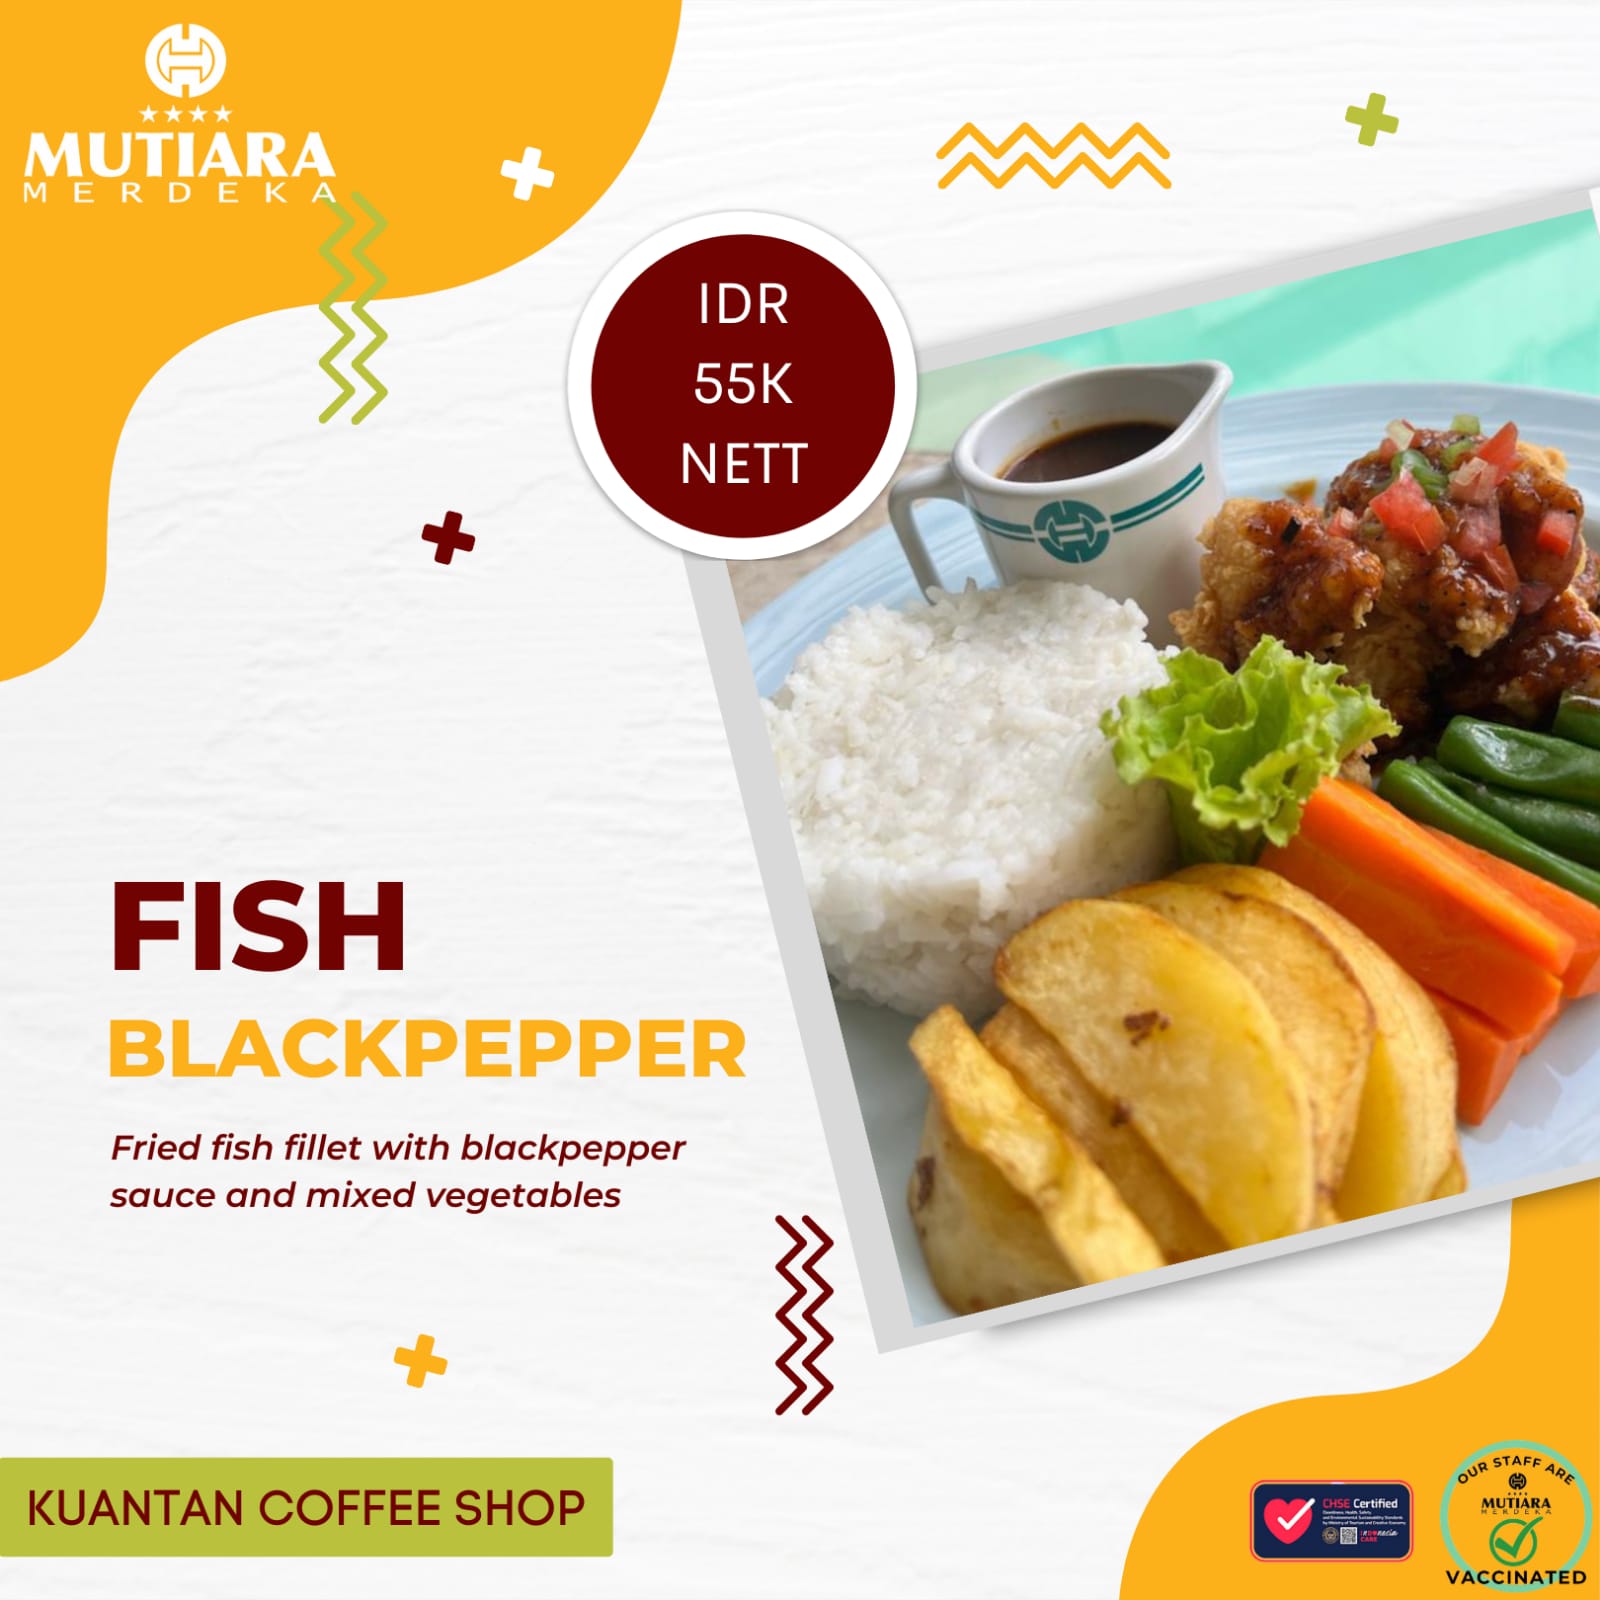 Menikmati Olahan Barbeque Fish Blackpepper di Hotel Mutiara Merdeka Pekanbaru